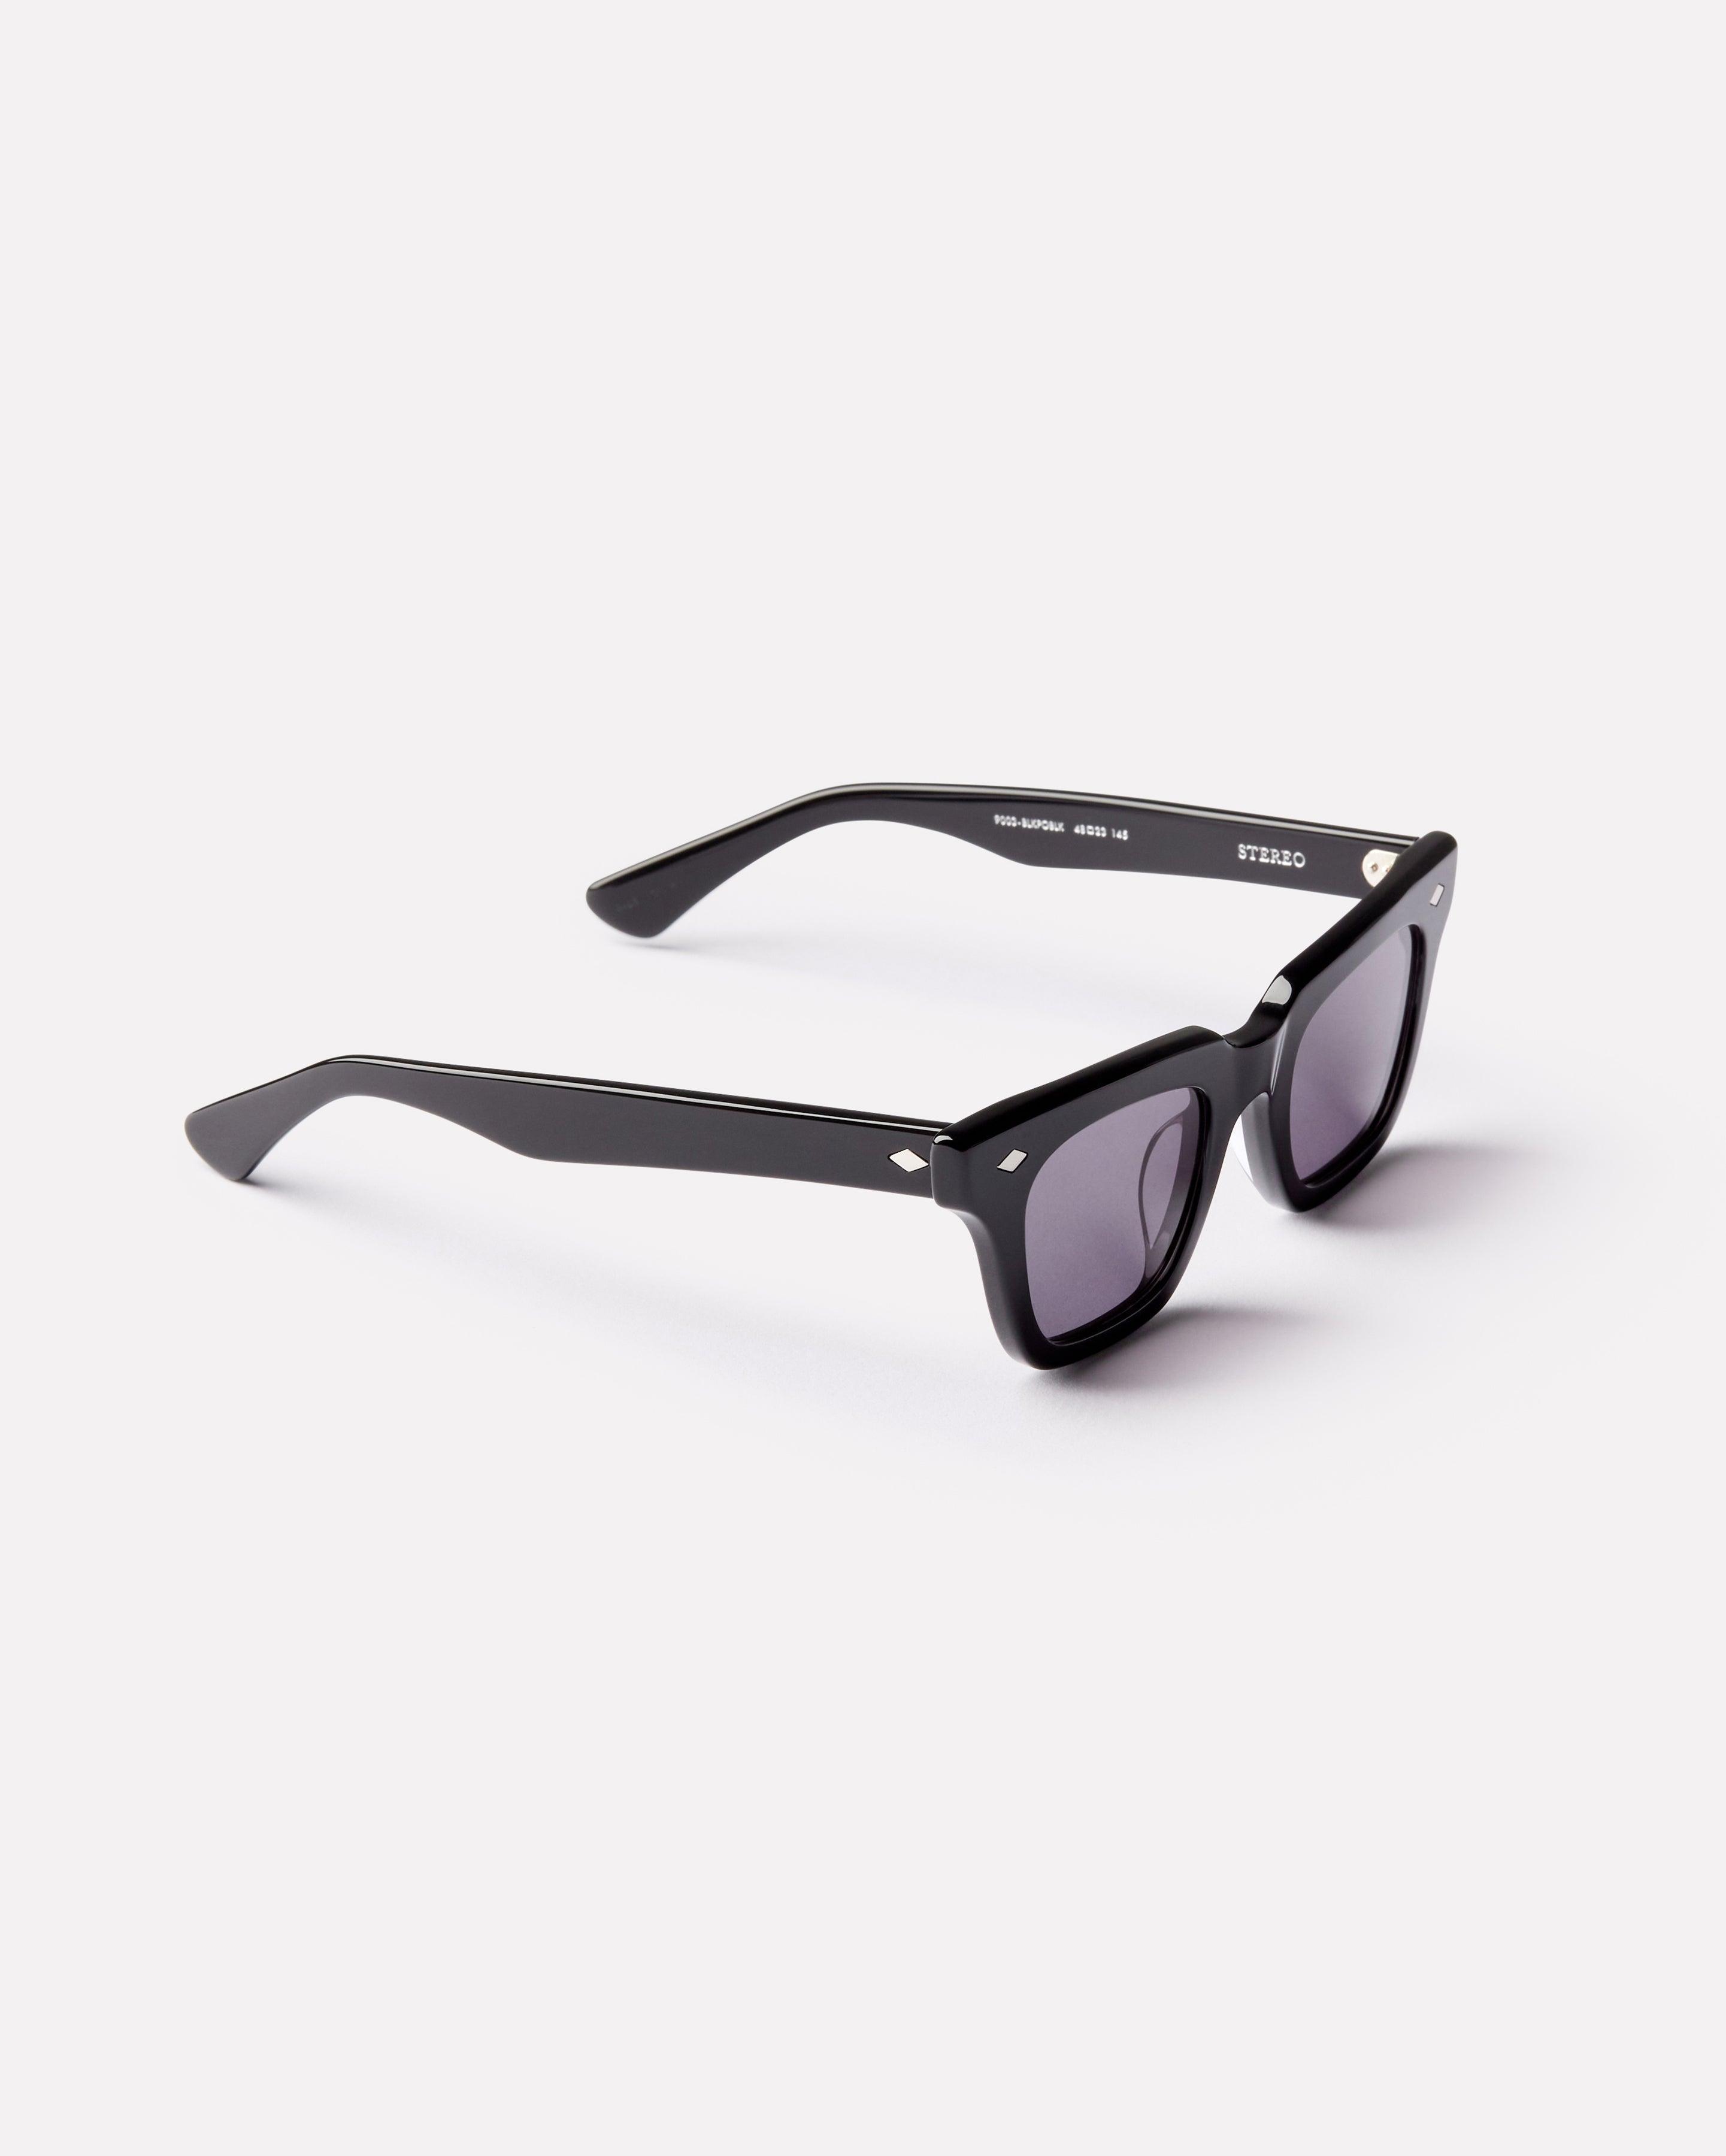 Stereo - Black Polished / Black - Sunglasses - EPOKHE EYEWEAR